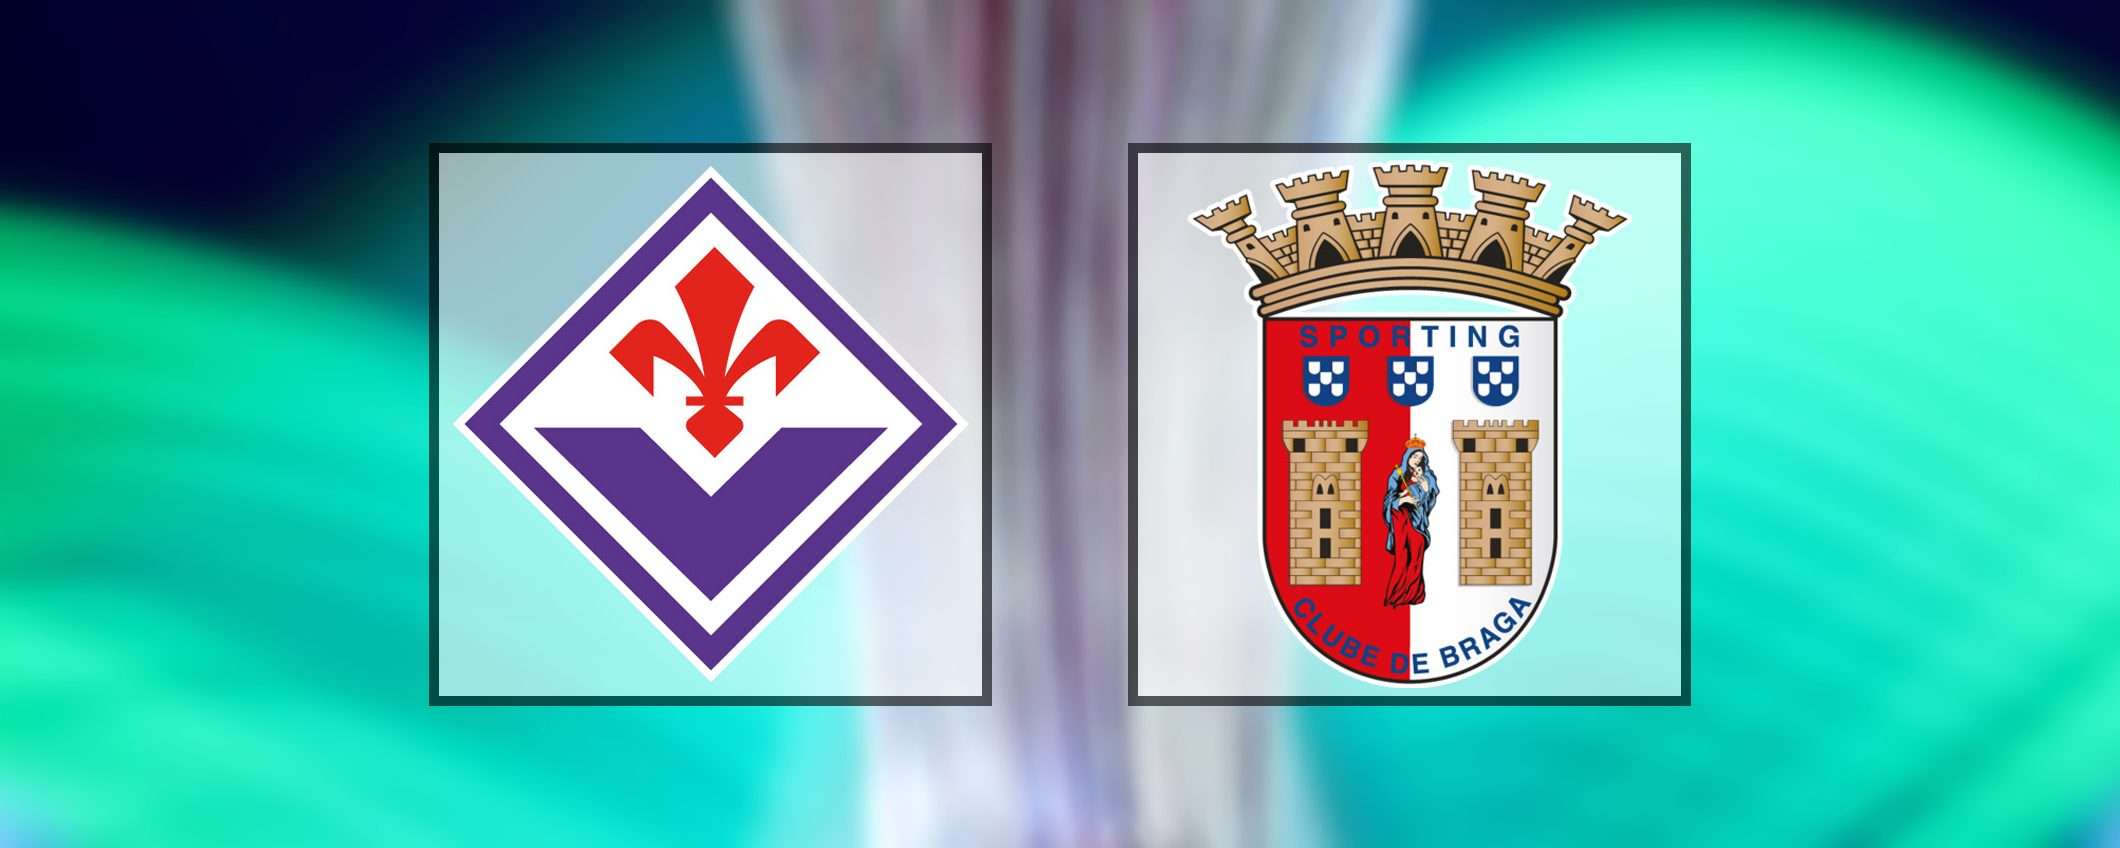 Come vedere Fiorentina-Sporting Braga in streaming